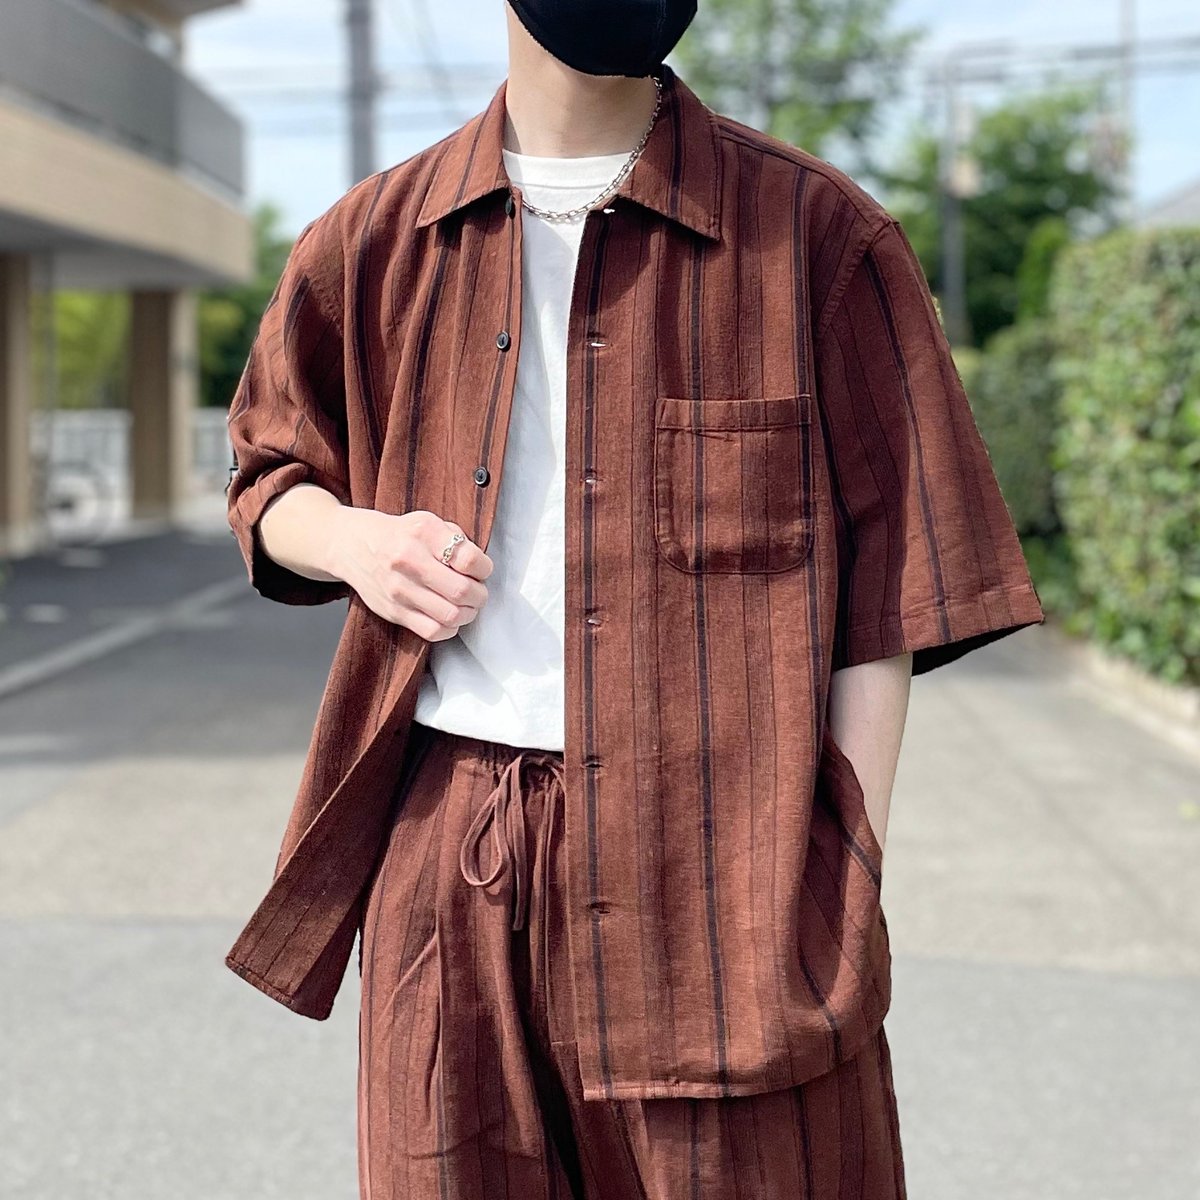 「【GU】サッと羽織るだけでサマになる!涼しげ素材の「ゆったりトップス」夏でも快適」|BuzzFeed Japanのイラスト